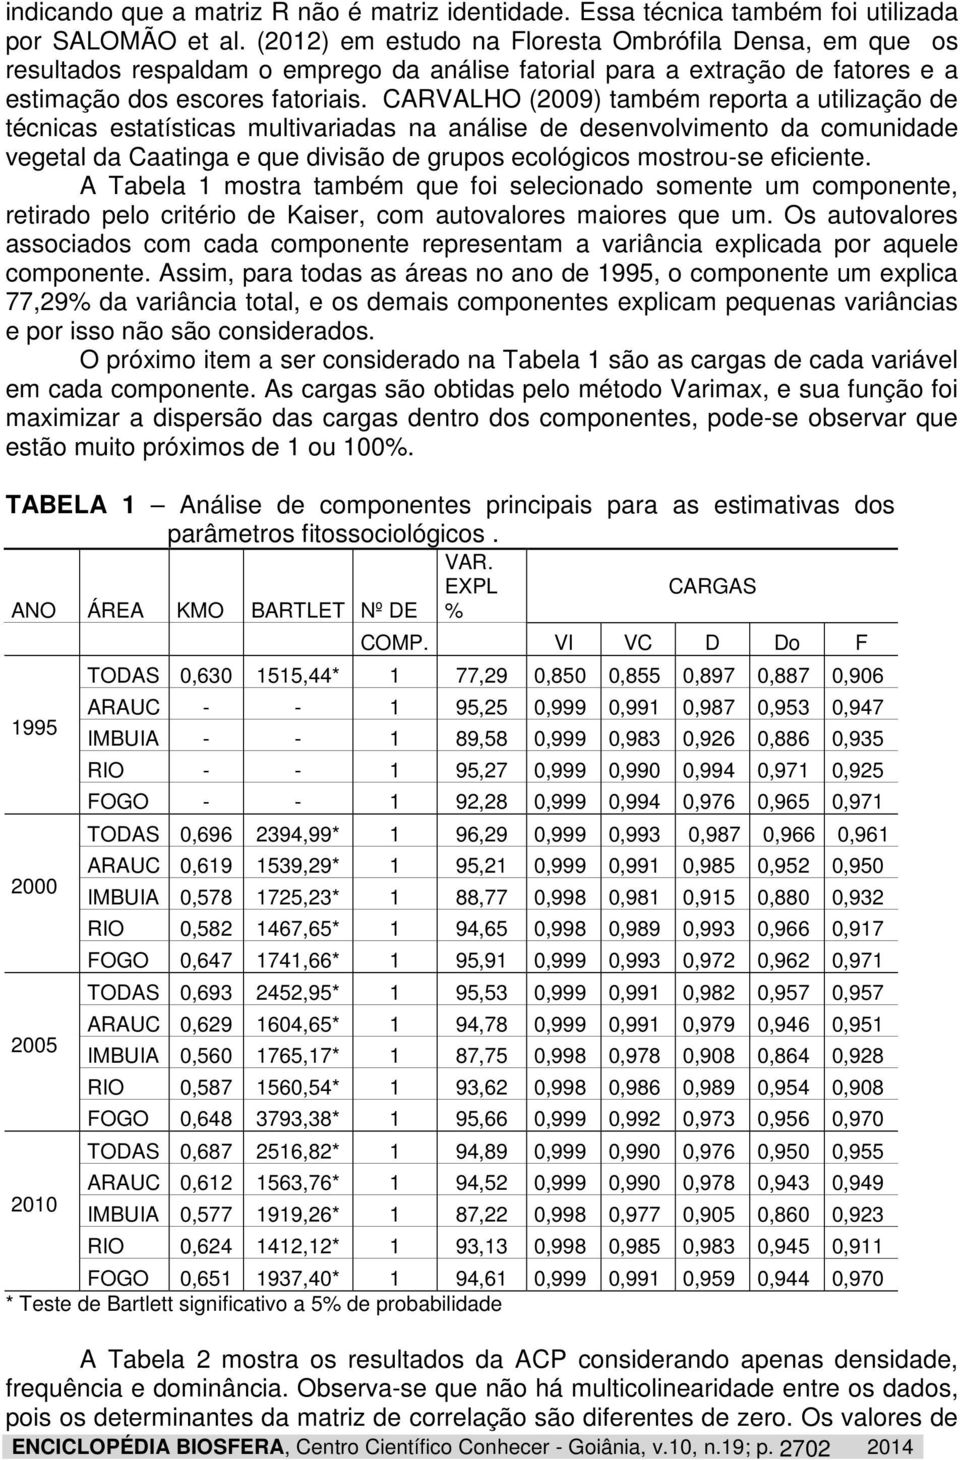 CARVALHO (2009) também reporta a utilização de técnicas estatísticas multivariadas na análise de desenvolvimento da comunidade vegetal da Caatinga e que divisão de grupos ecológicos mostrou-se